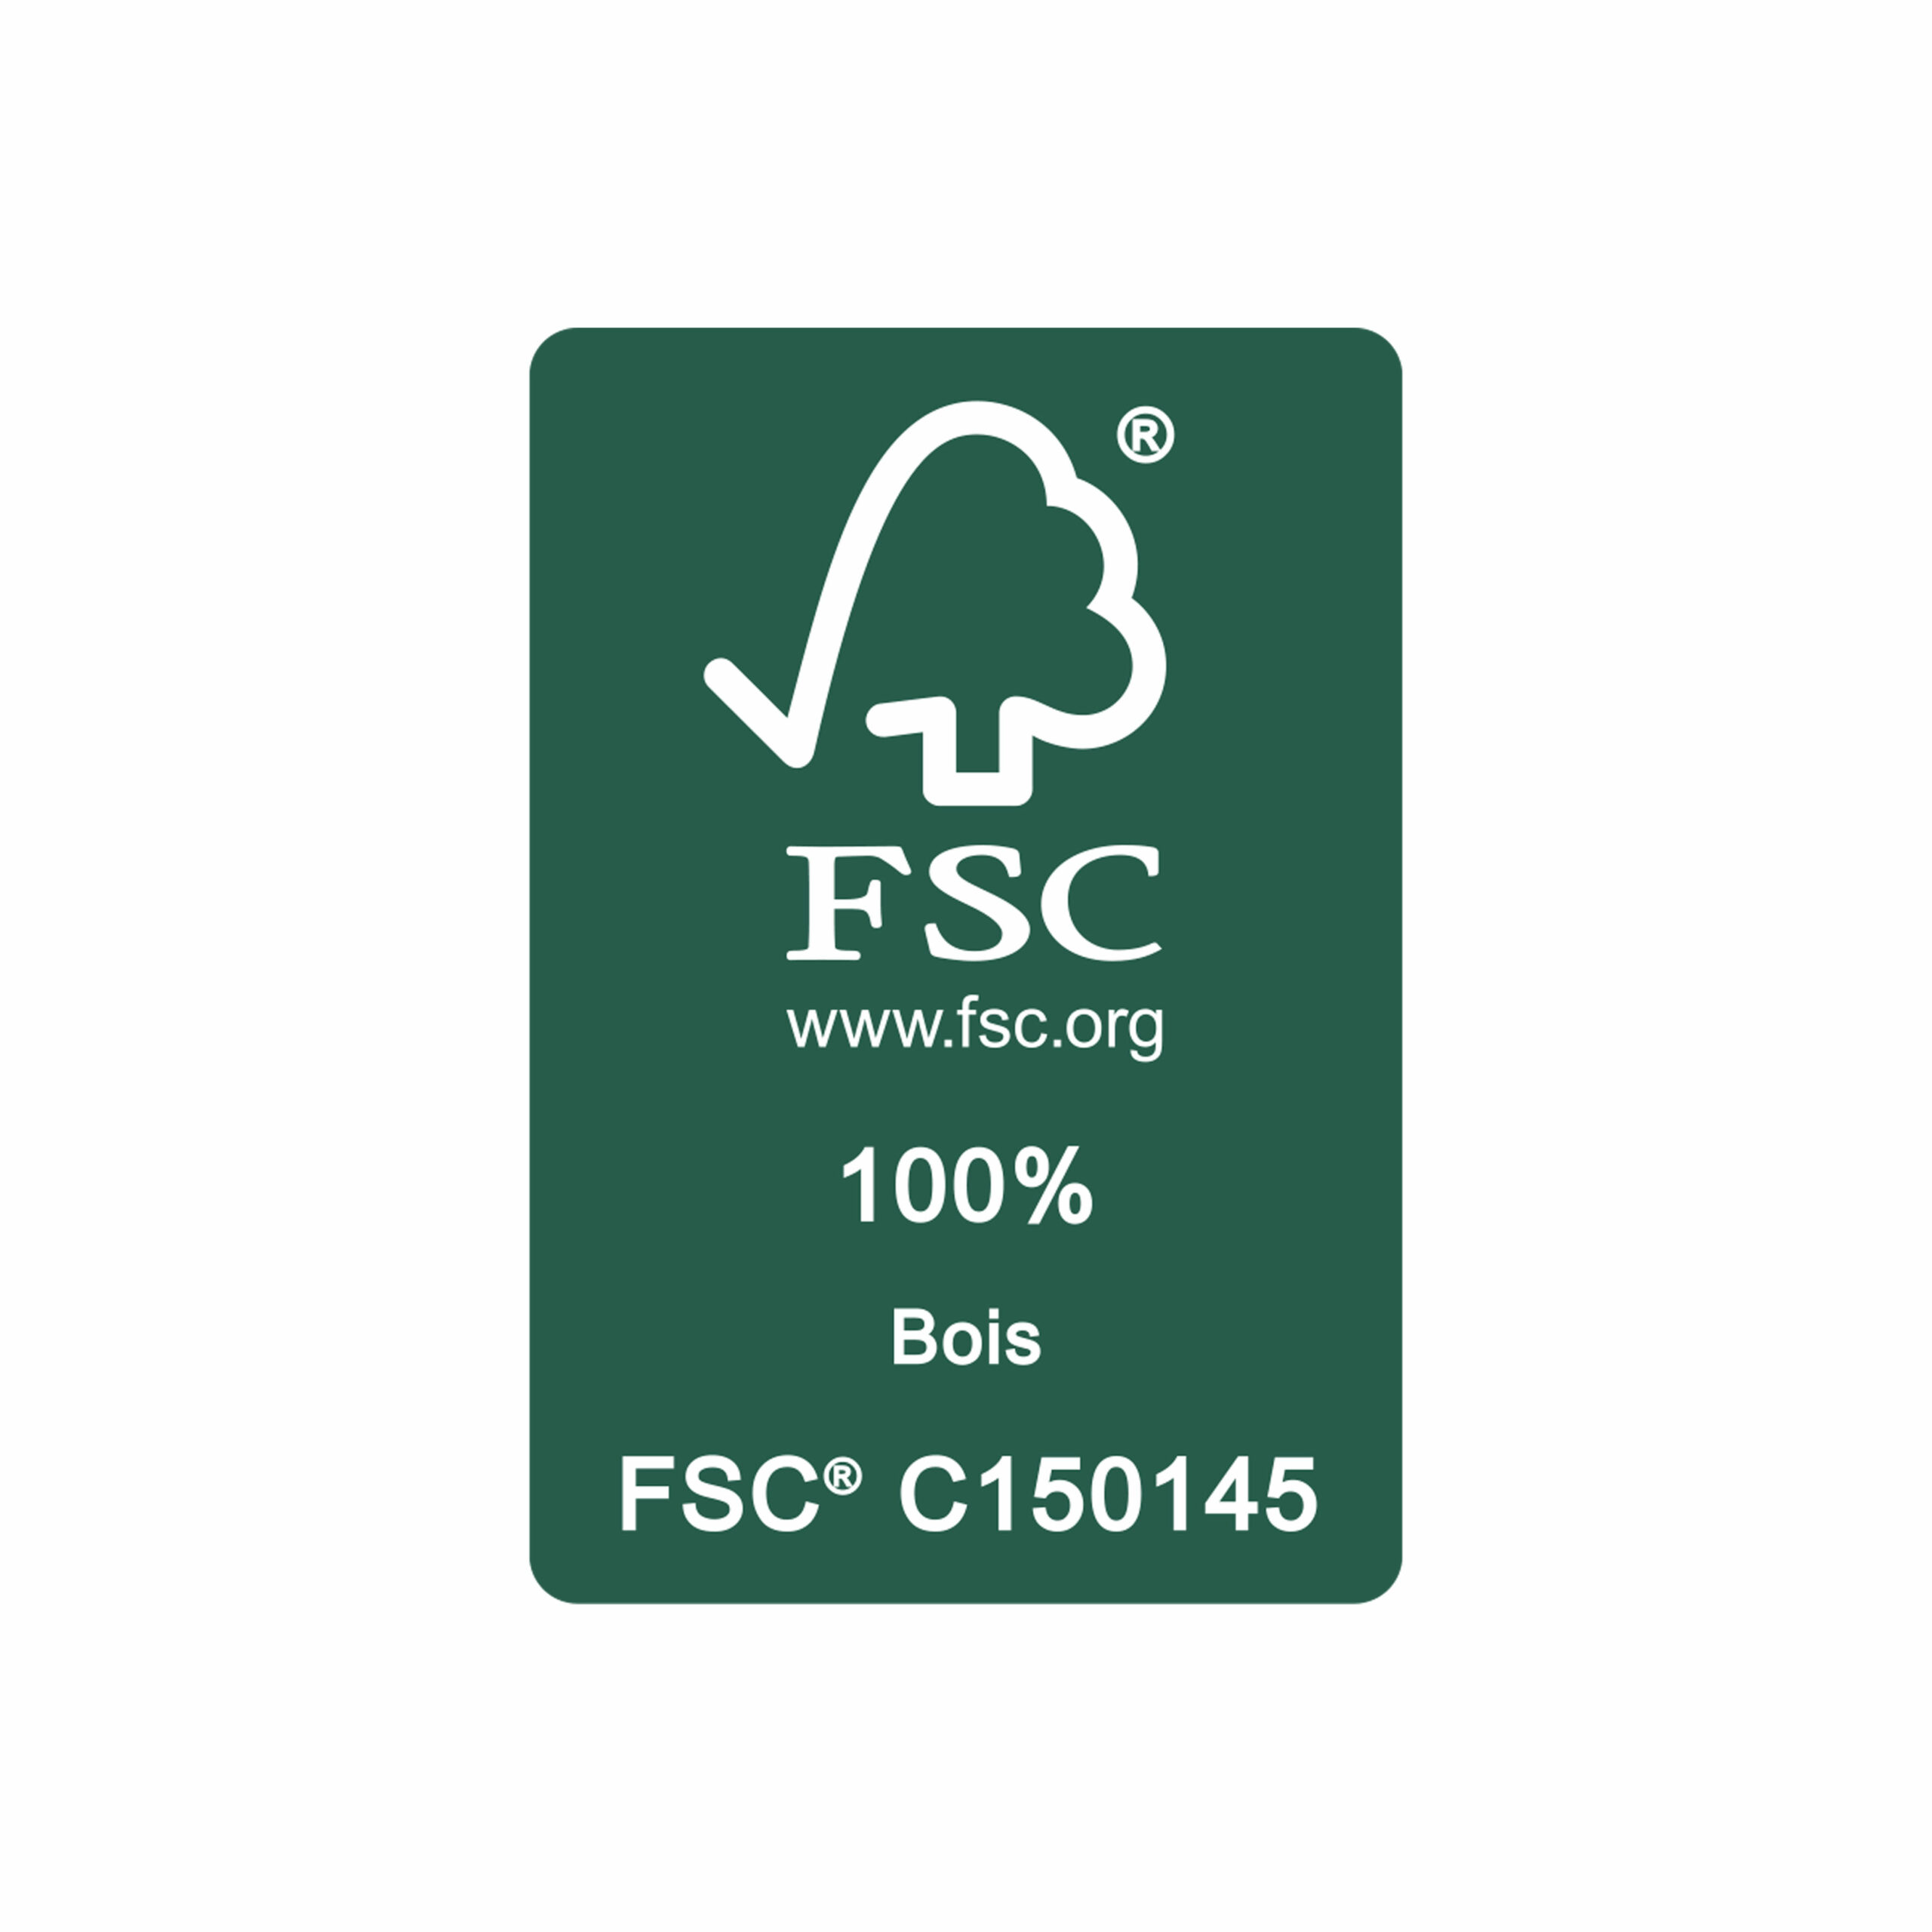 Mobilier de jardin en bois certifié FSC